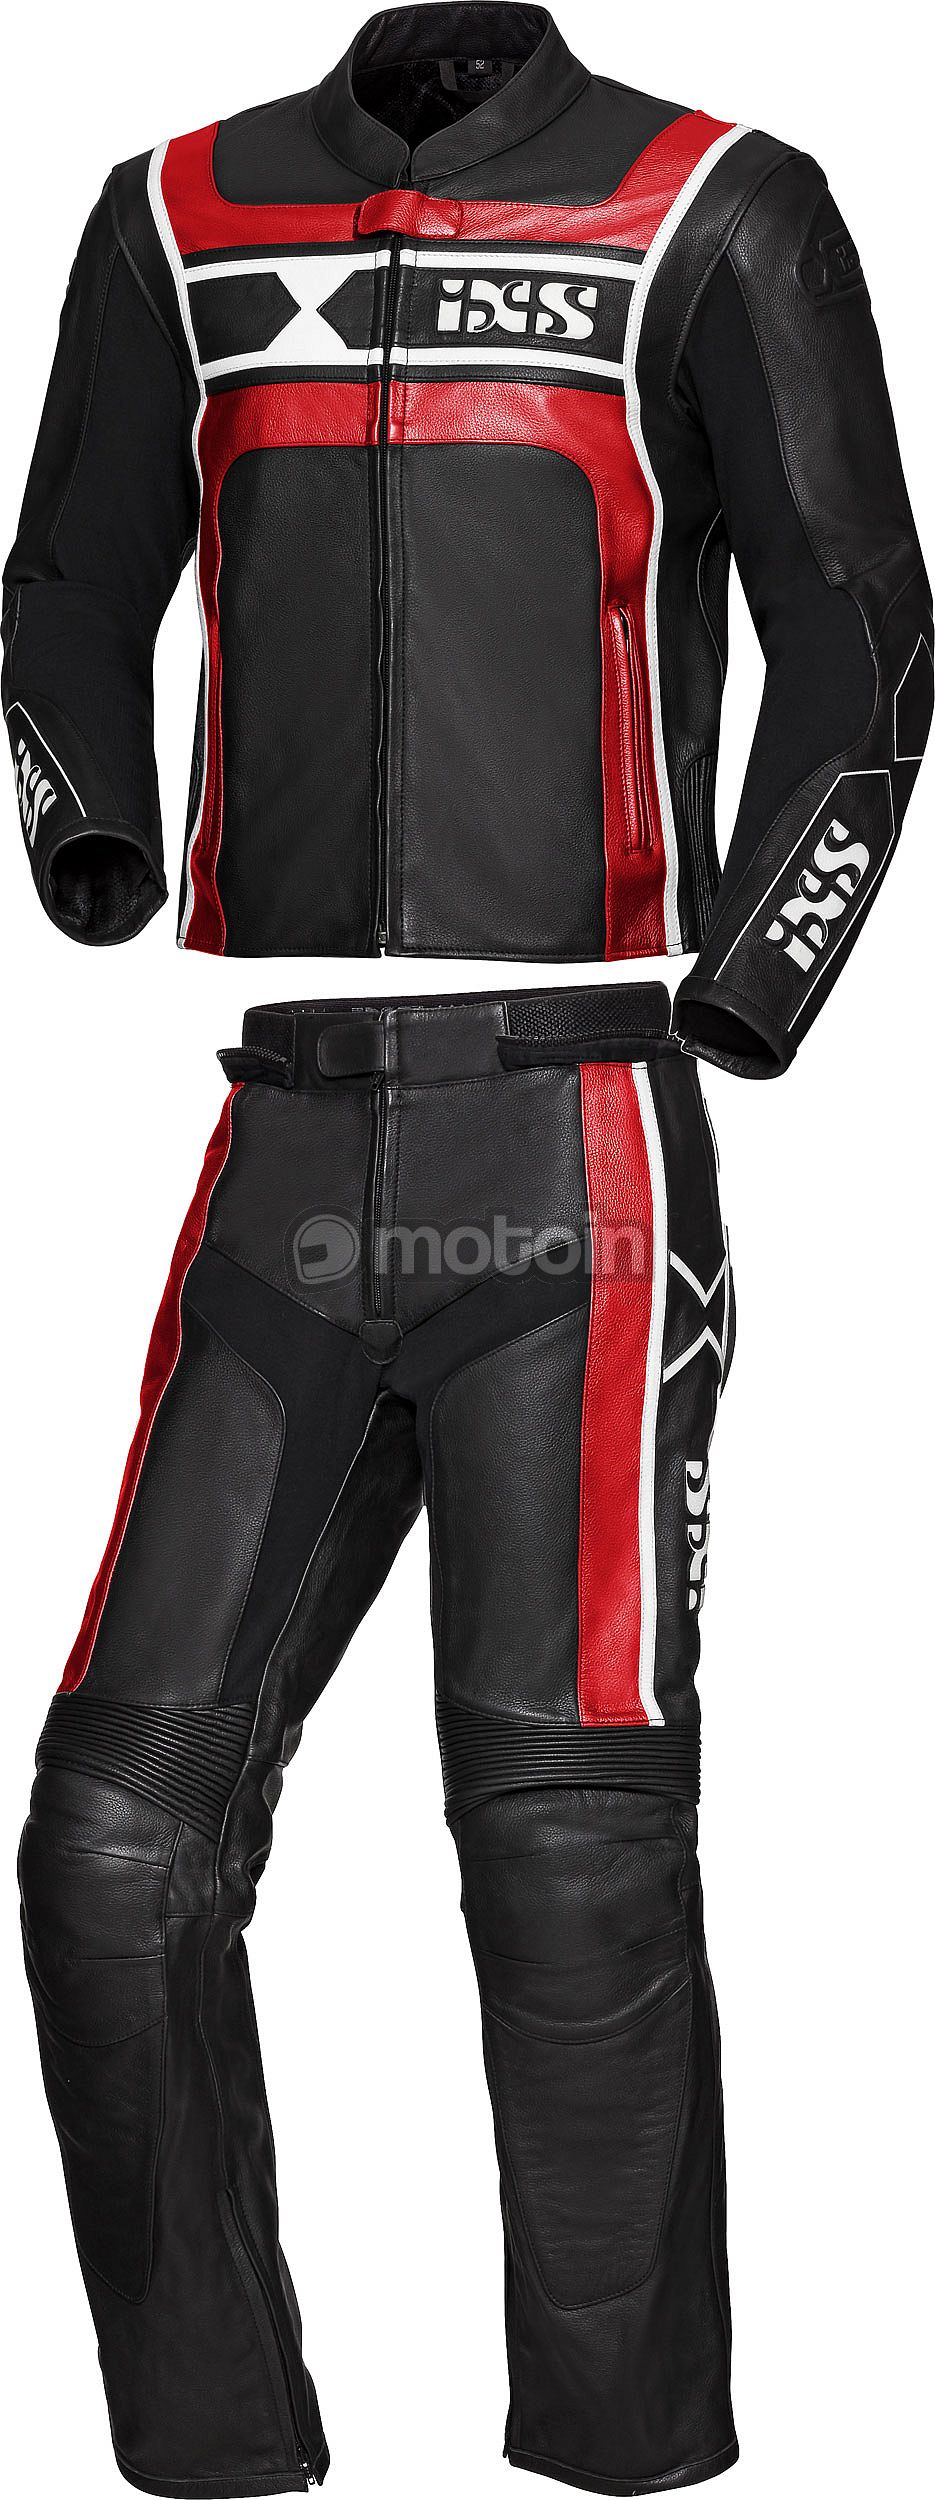 IXS RS-500 LD, leather suit 2pcs.